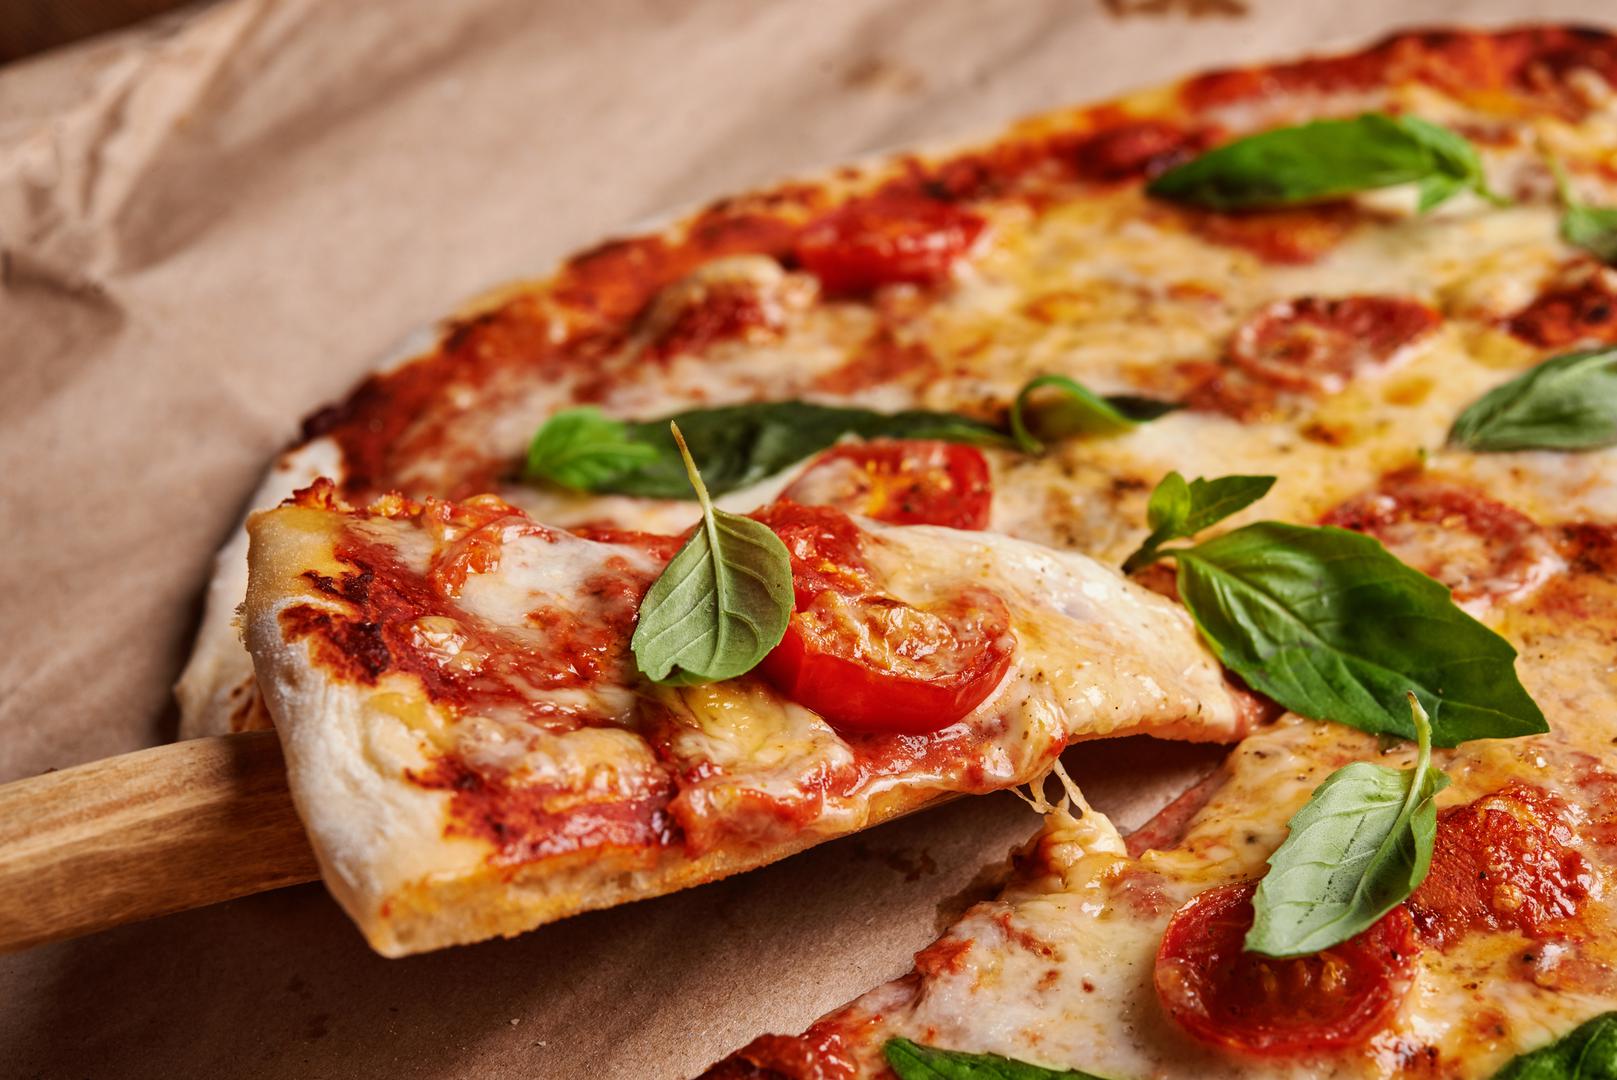 4. PIZZA - Pizza je omiljena studentska hrana, ali postoji puno zdravih recepta za pizze koje su jednako fine i jednostavne za pripremanje. Napravite tijesto od tikvica, mini pizzu s patlidžanom ili gljivama, a možete napraviti i svoje tijesto od cvjetače kako biste dodali povrće u prehranu i smanjili unos ugljikohidrata.